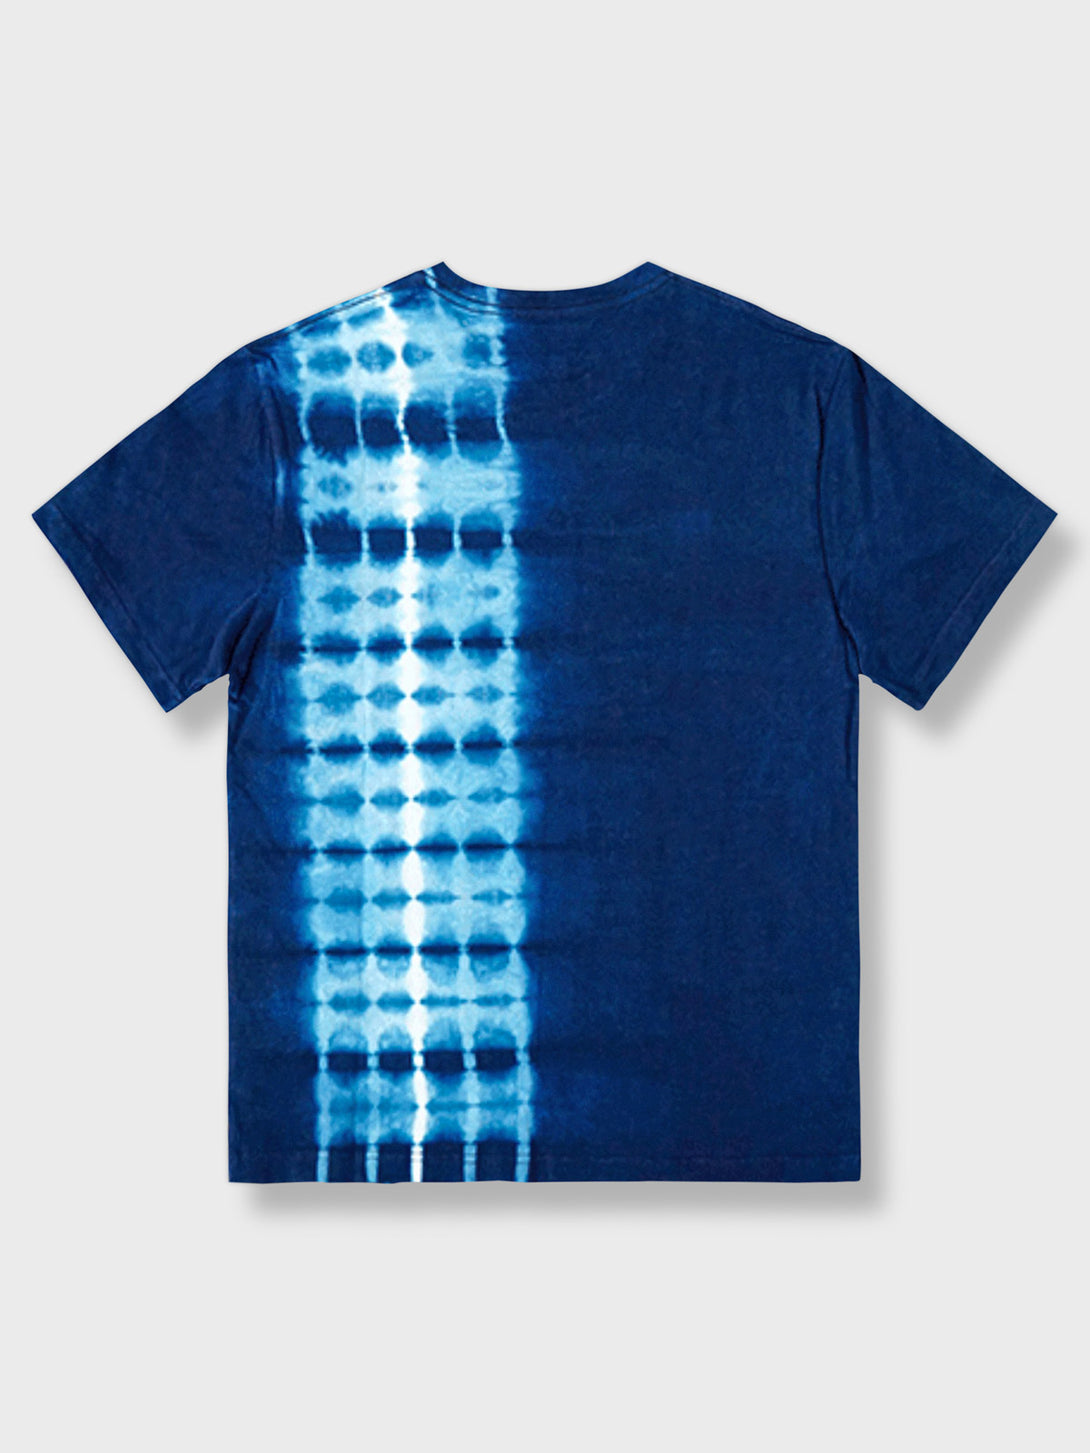 手作り藍染めタイダイ純綿Tシャツ、リラックスフィットで通気性の高い純綿素材、ユニークなタイダイパターン